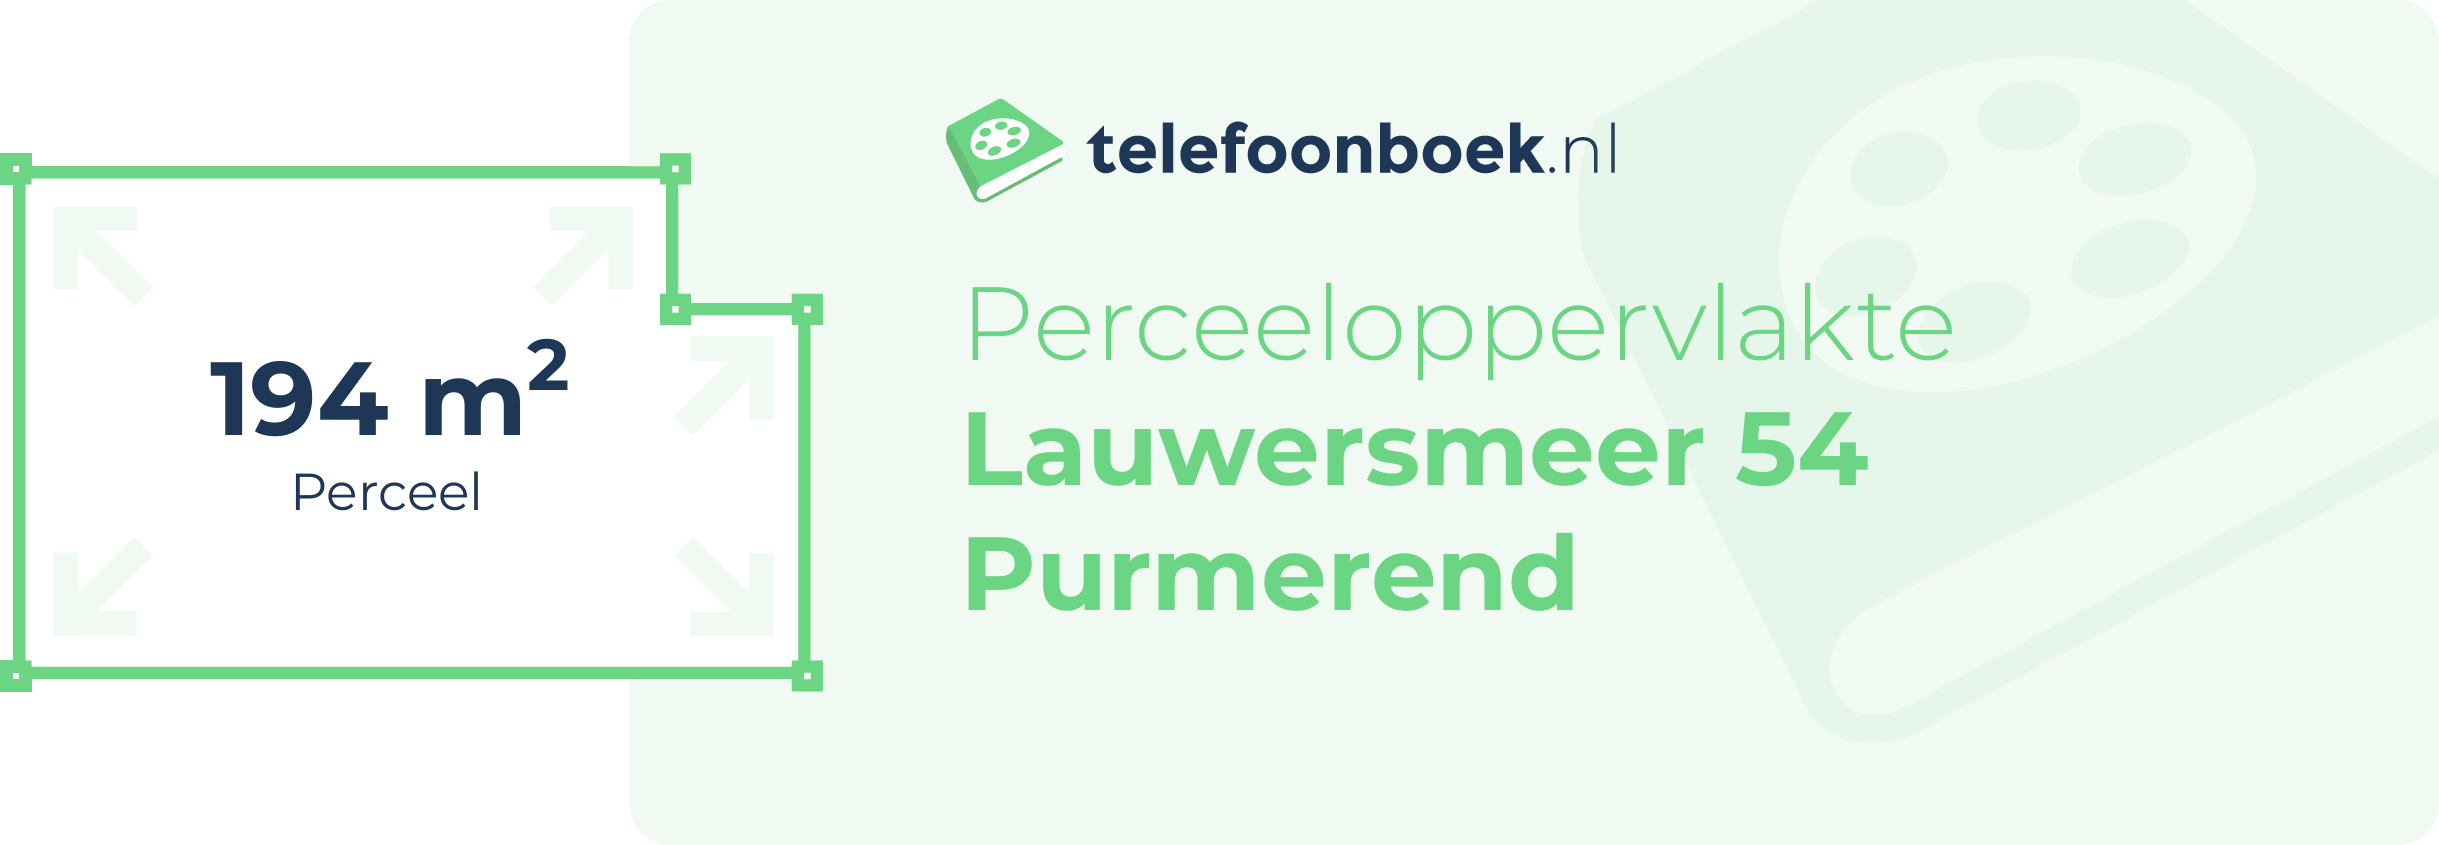 Perceeloppervlakte Lauwersmeer 54 Purmerend